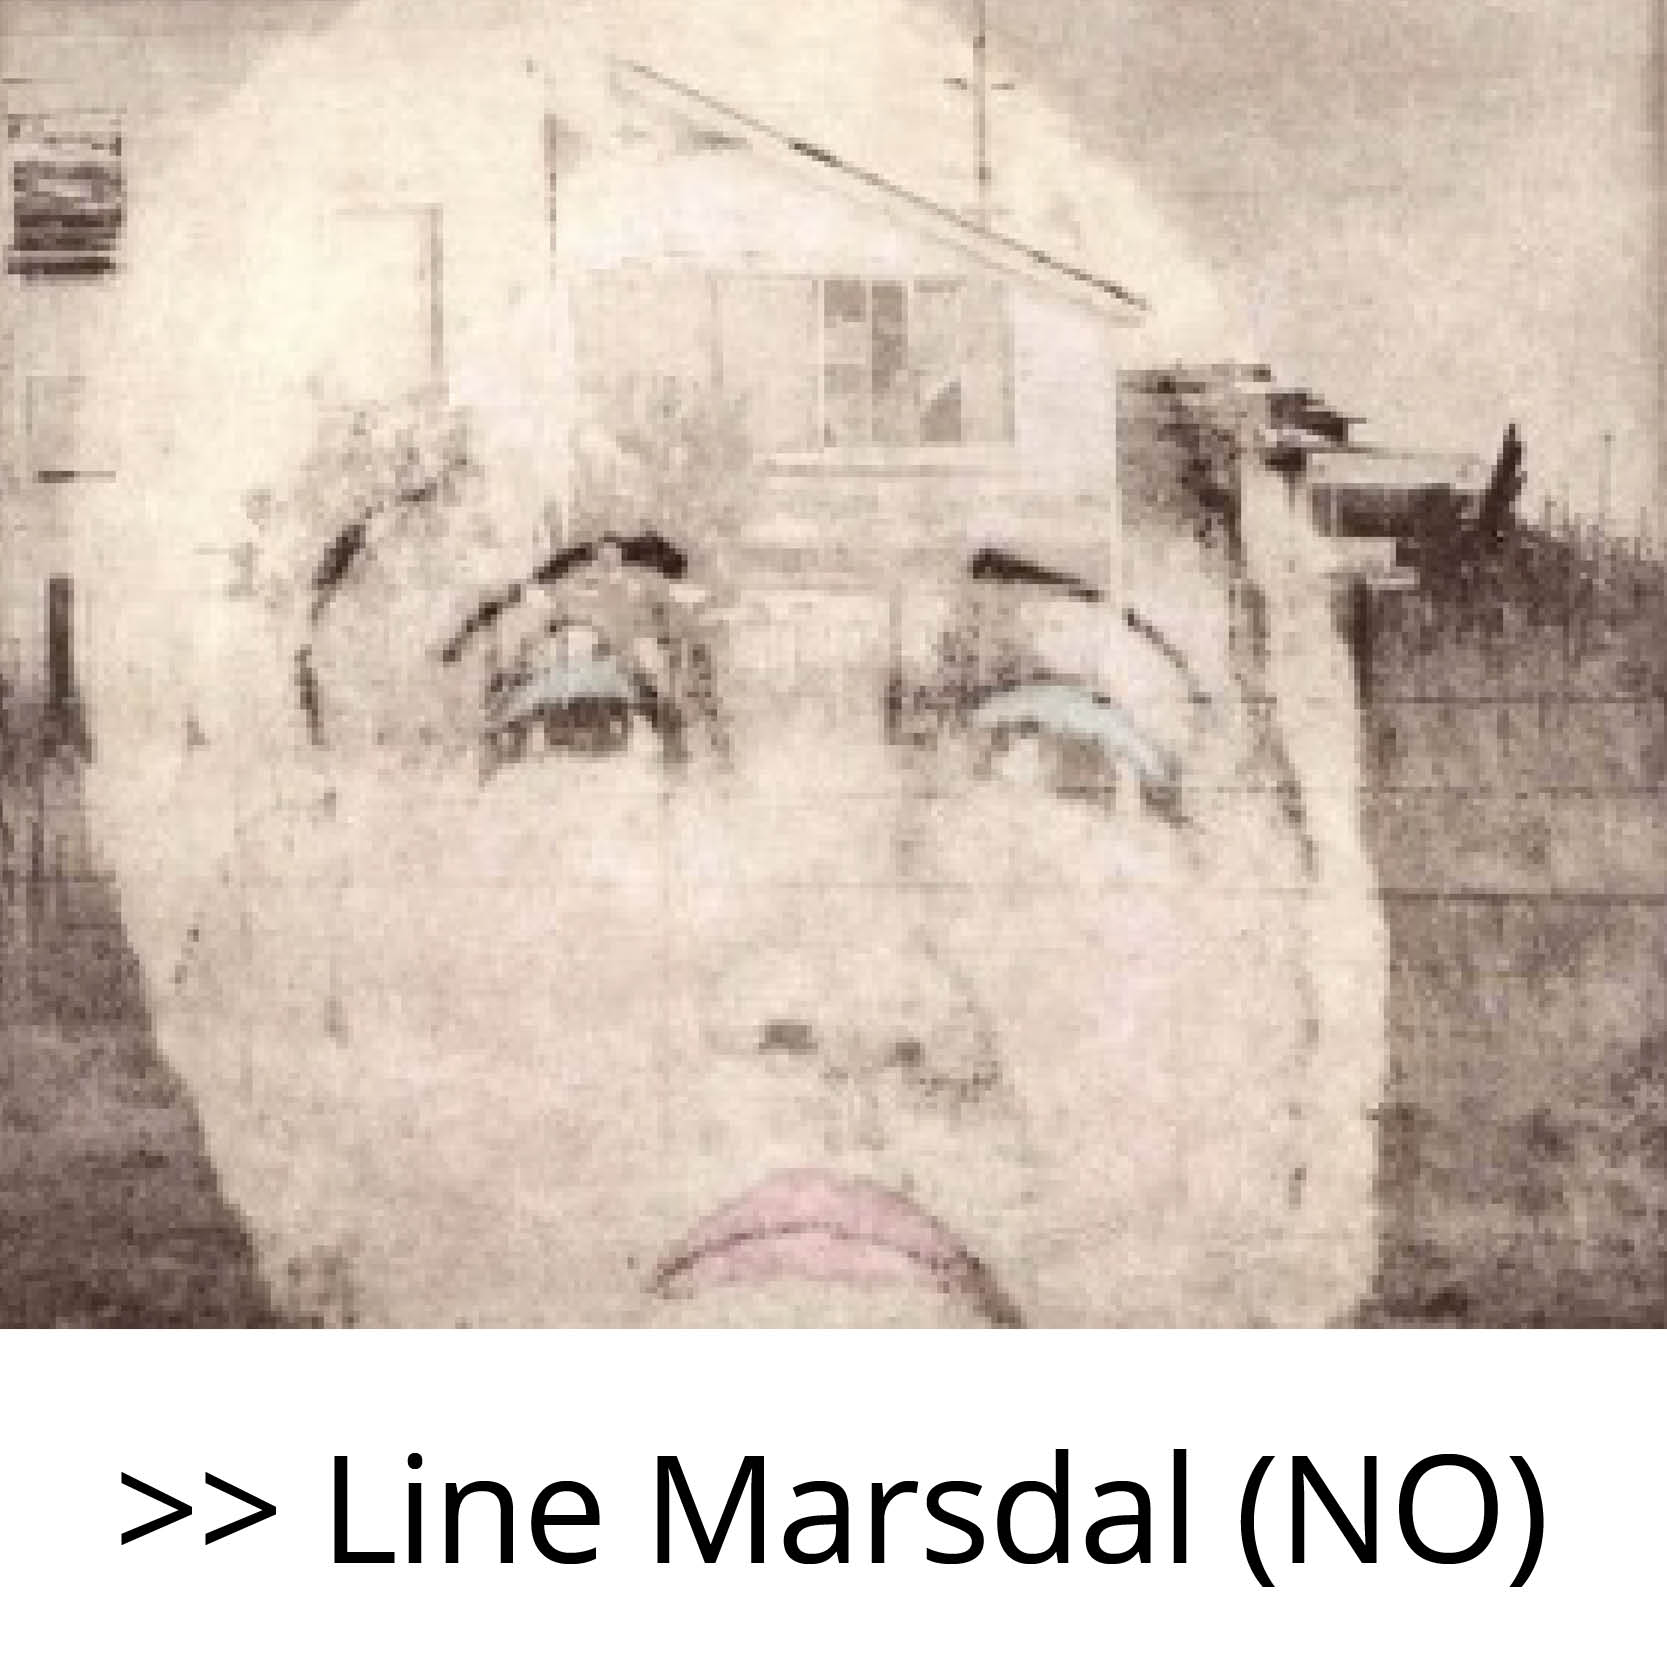 Line_Marsda_(NO)